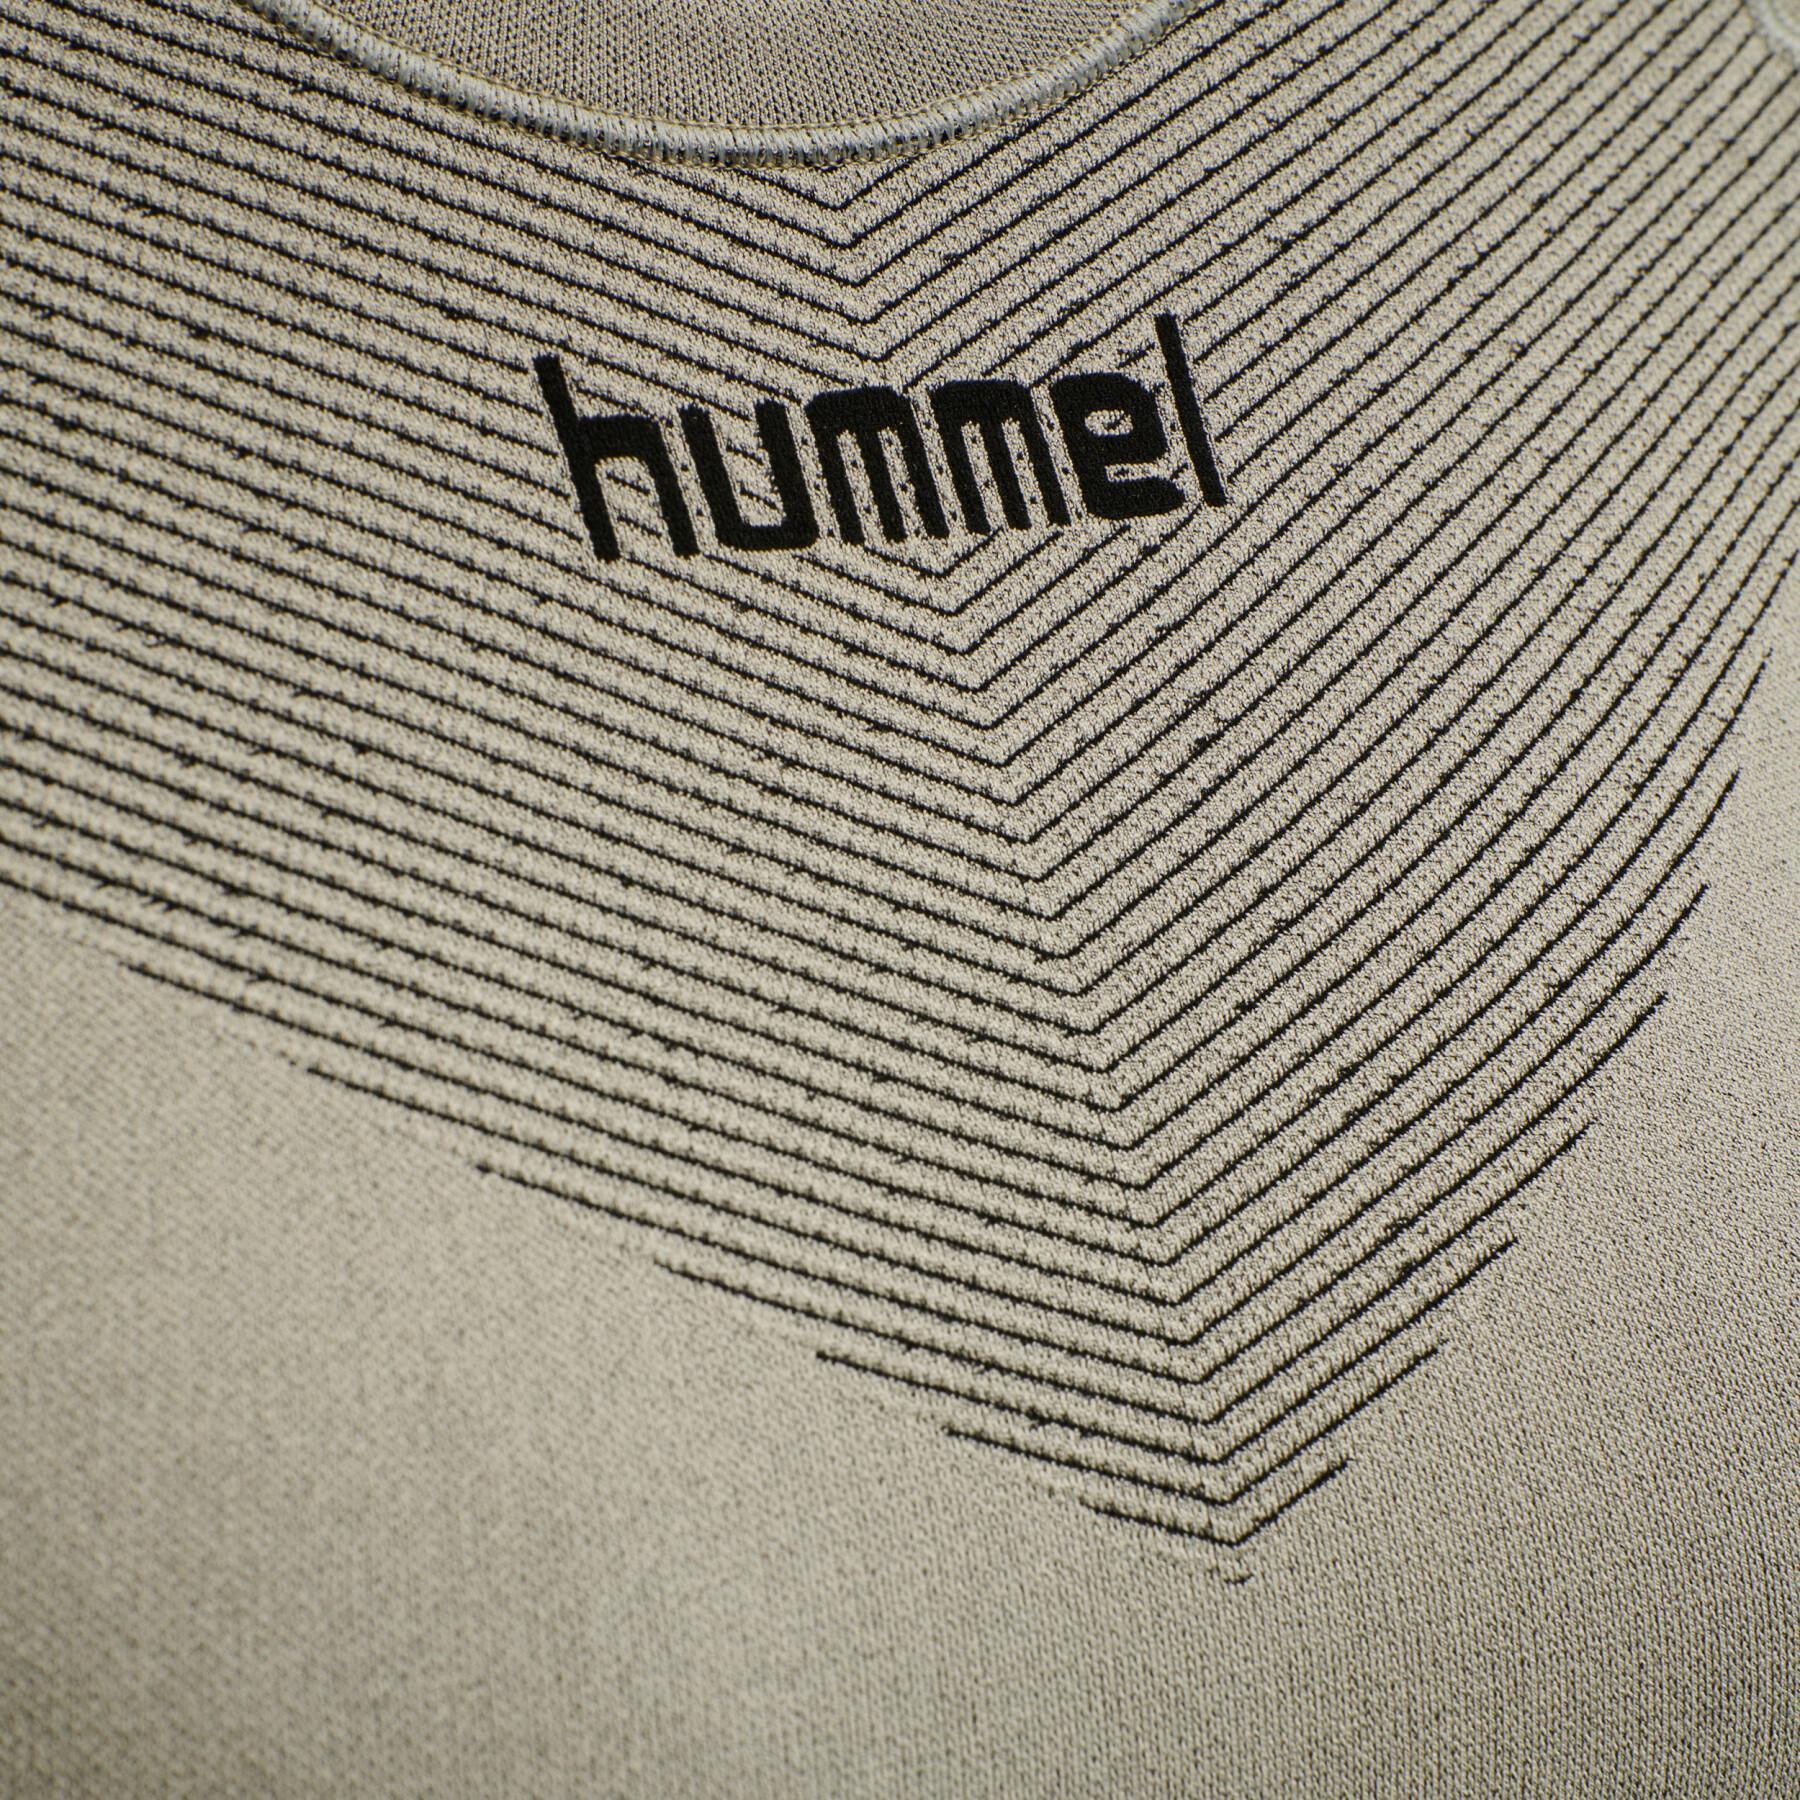 Camisola de manga comprida feminina Hummel First